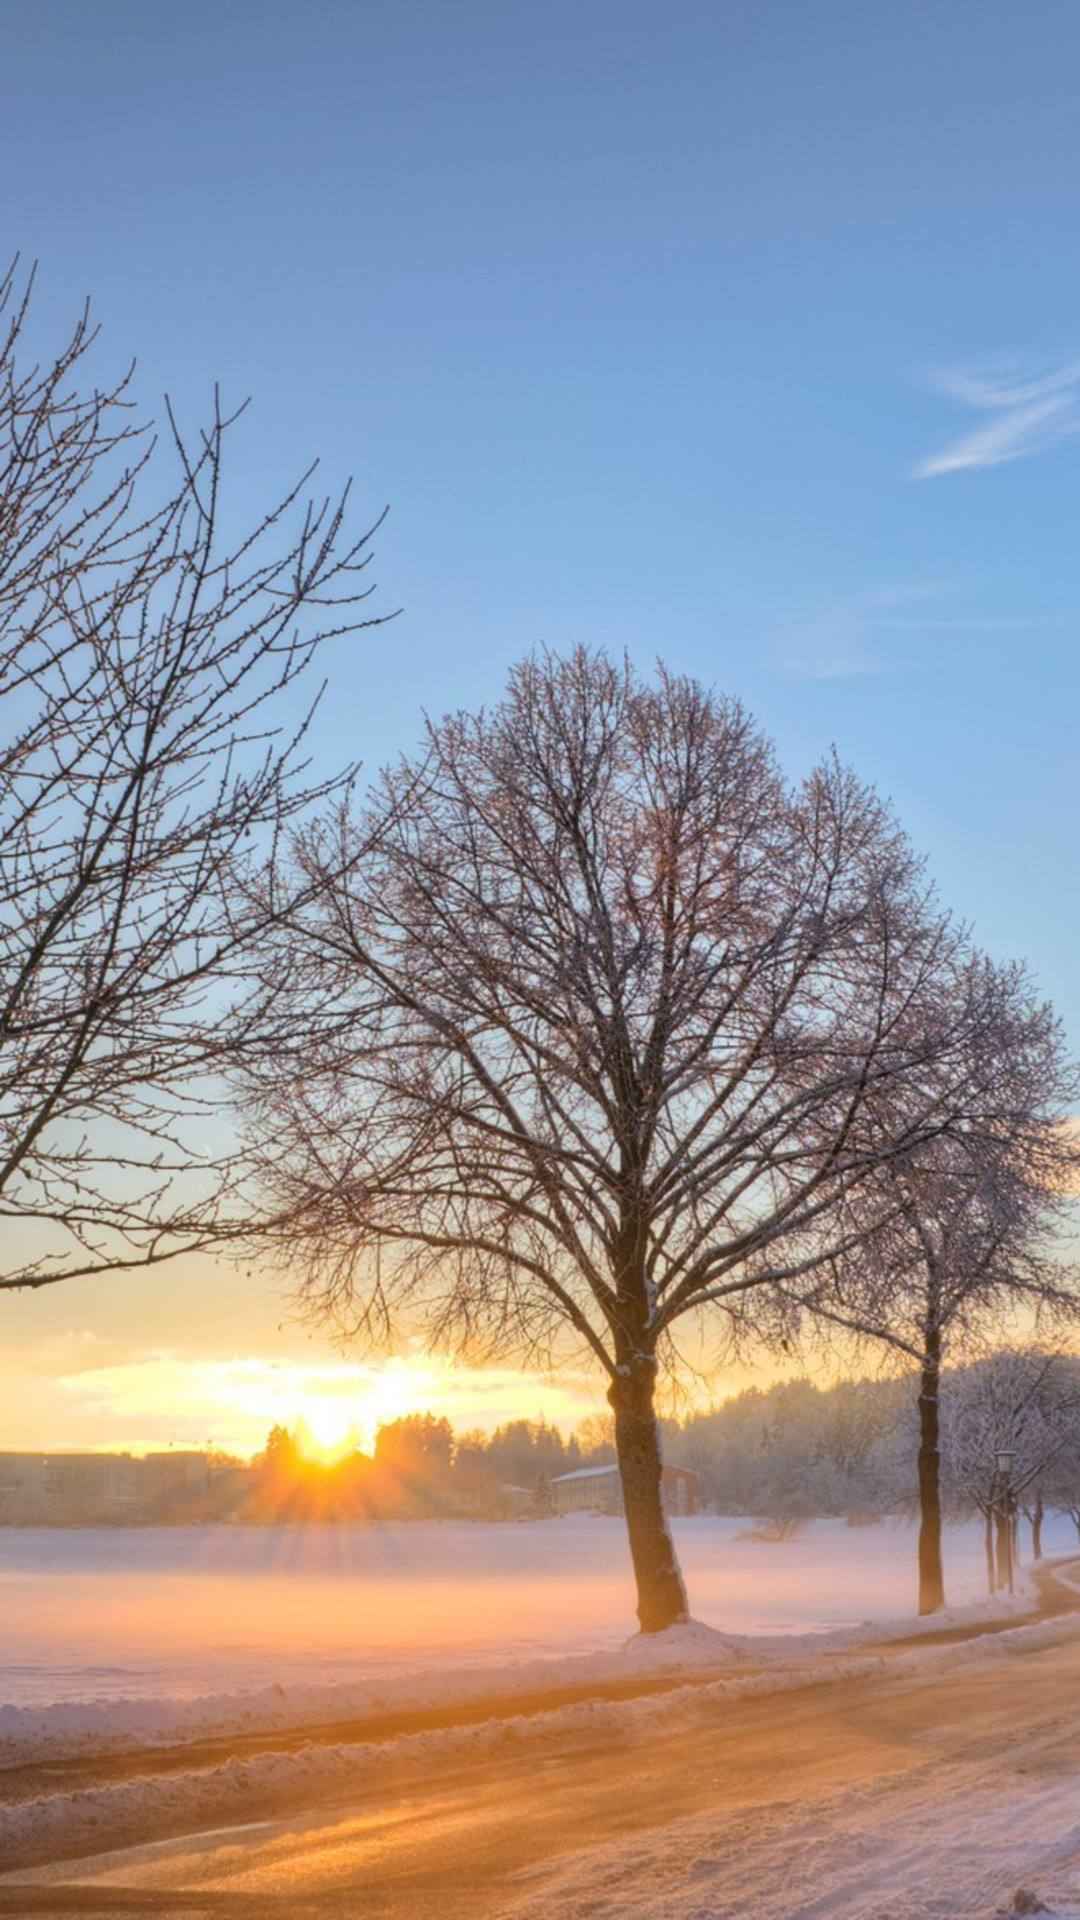 赤红的夕阳照射在雪地树木的超唯美风景手机壁纸免费下载